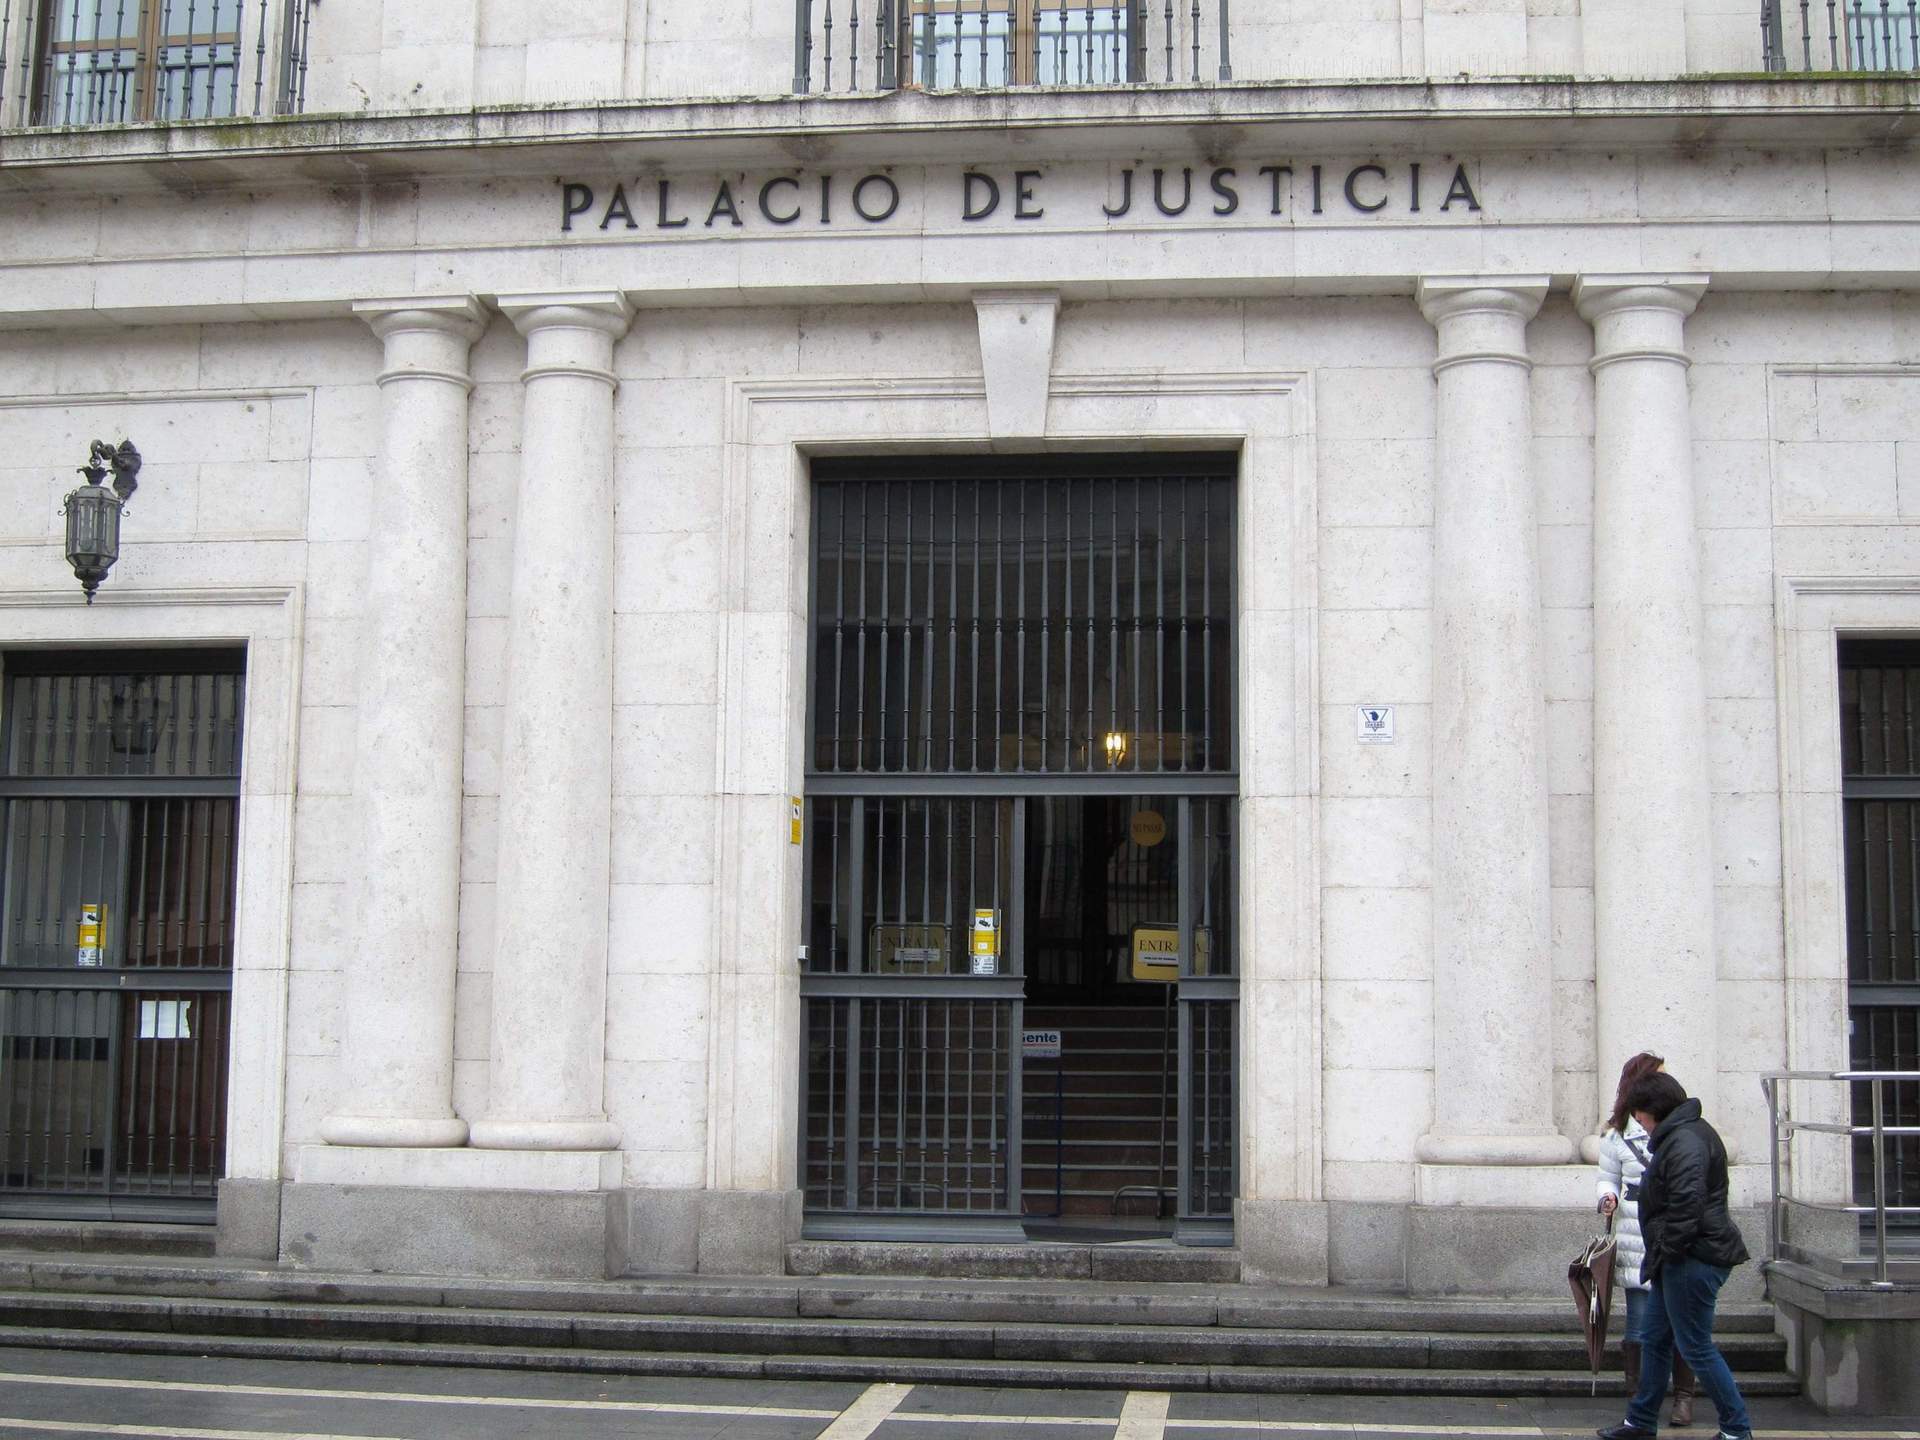 El profesor de Medina (Valladolid) condenado por abusar de un menor se enfrenta ahora a otra causa de 23 años de cárcel